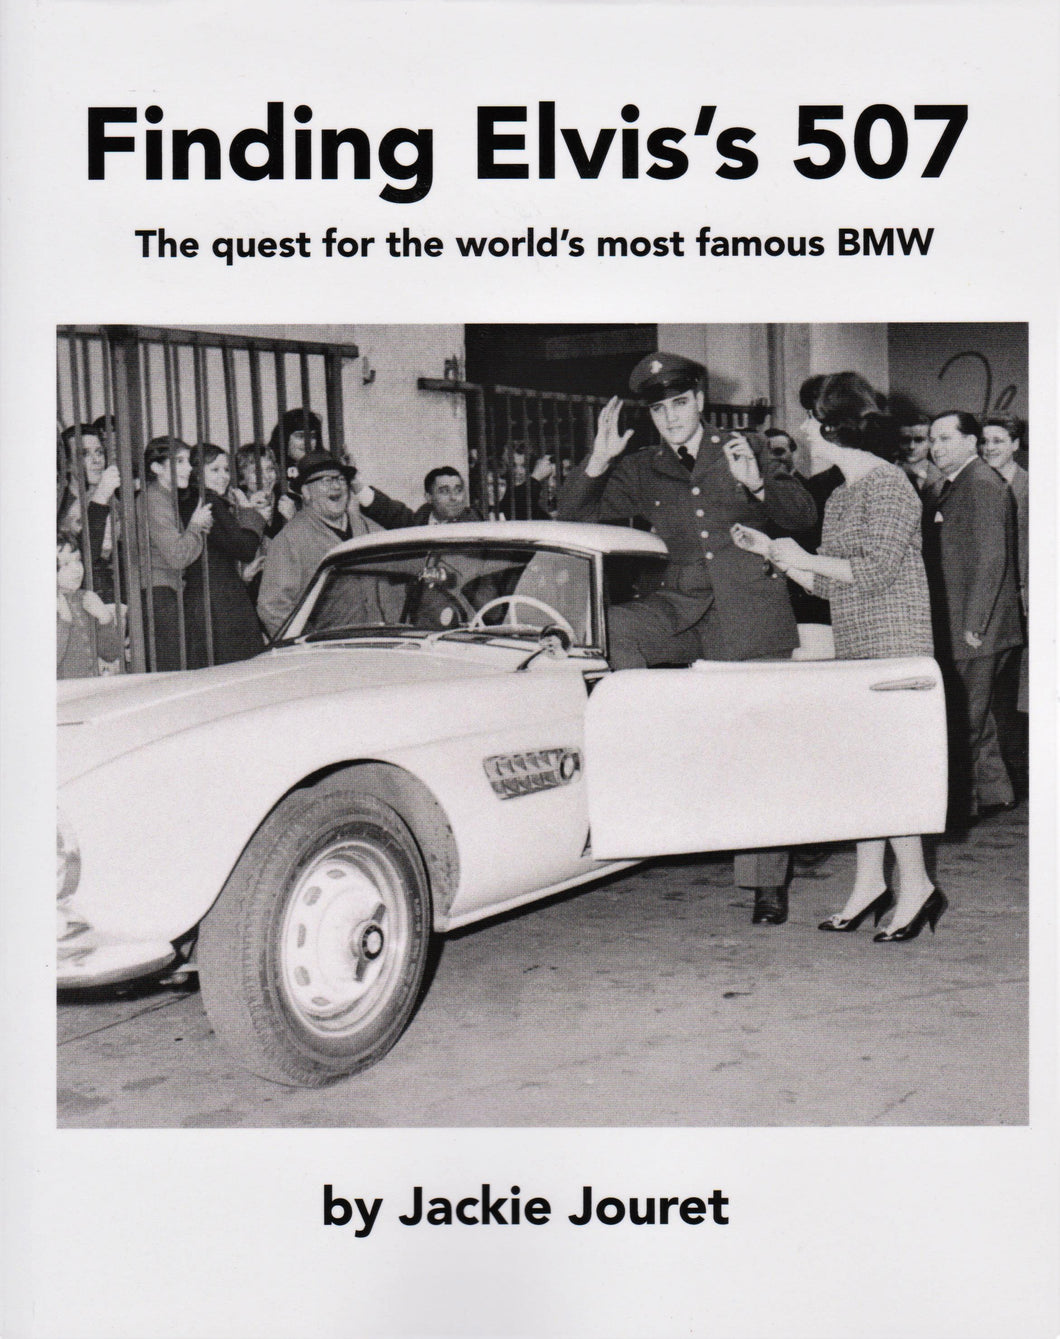 Finding Elvis's 507 by Jackie Jouret